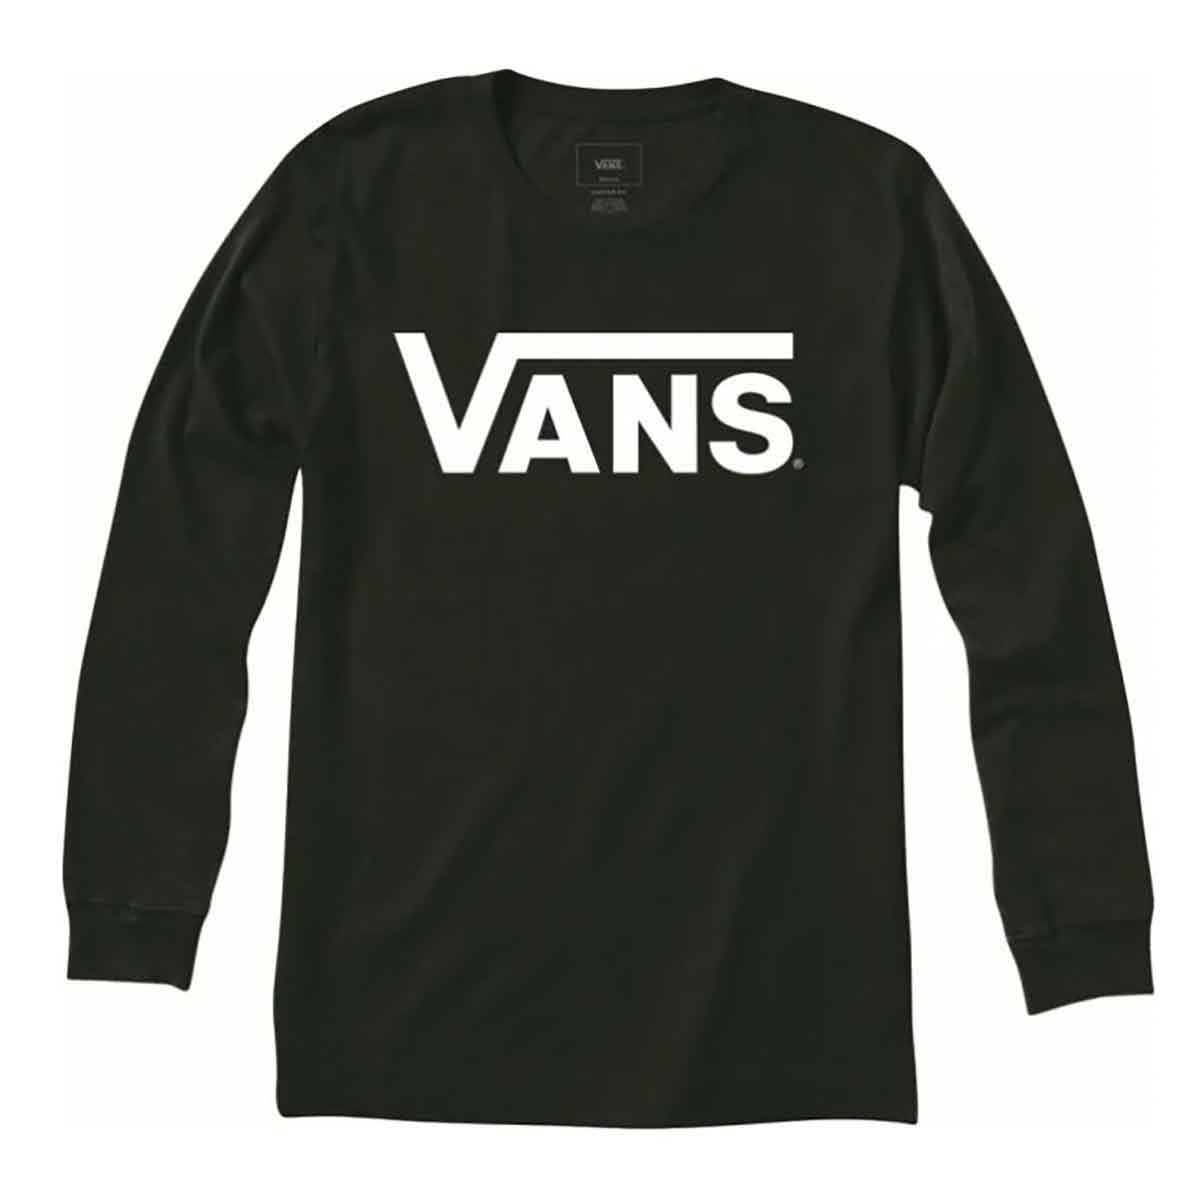 Vans Long Sleeve T-Shirt - Black/White | SoCal Skateshop